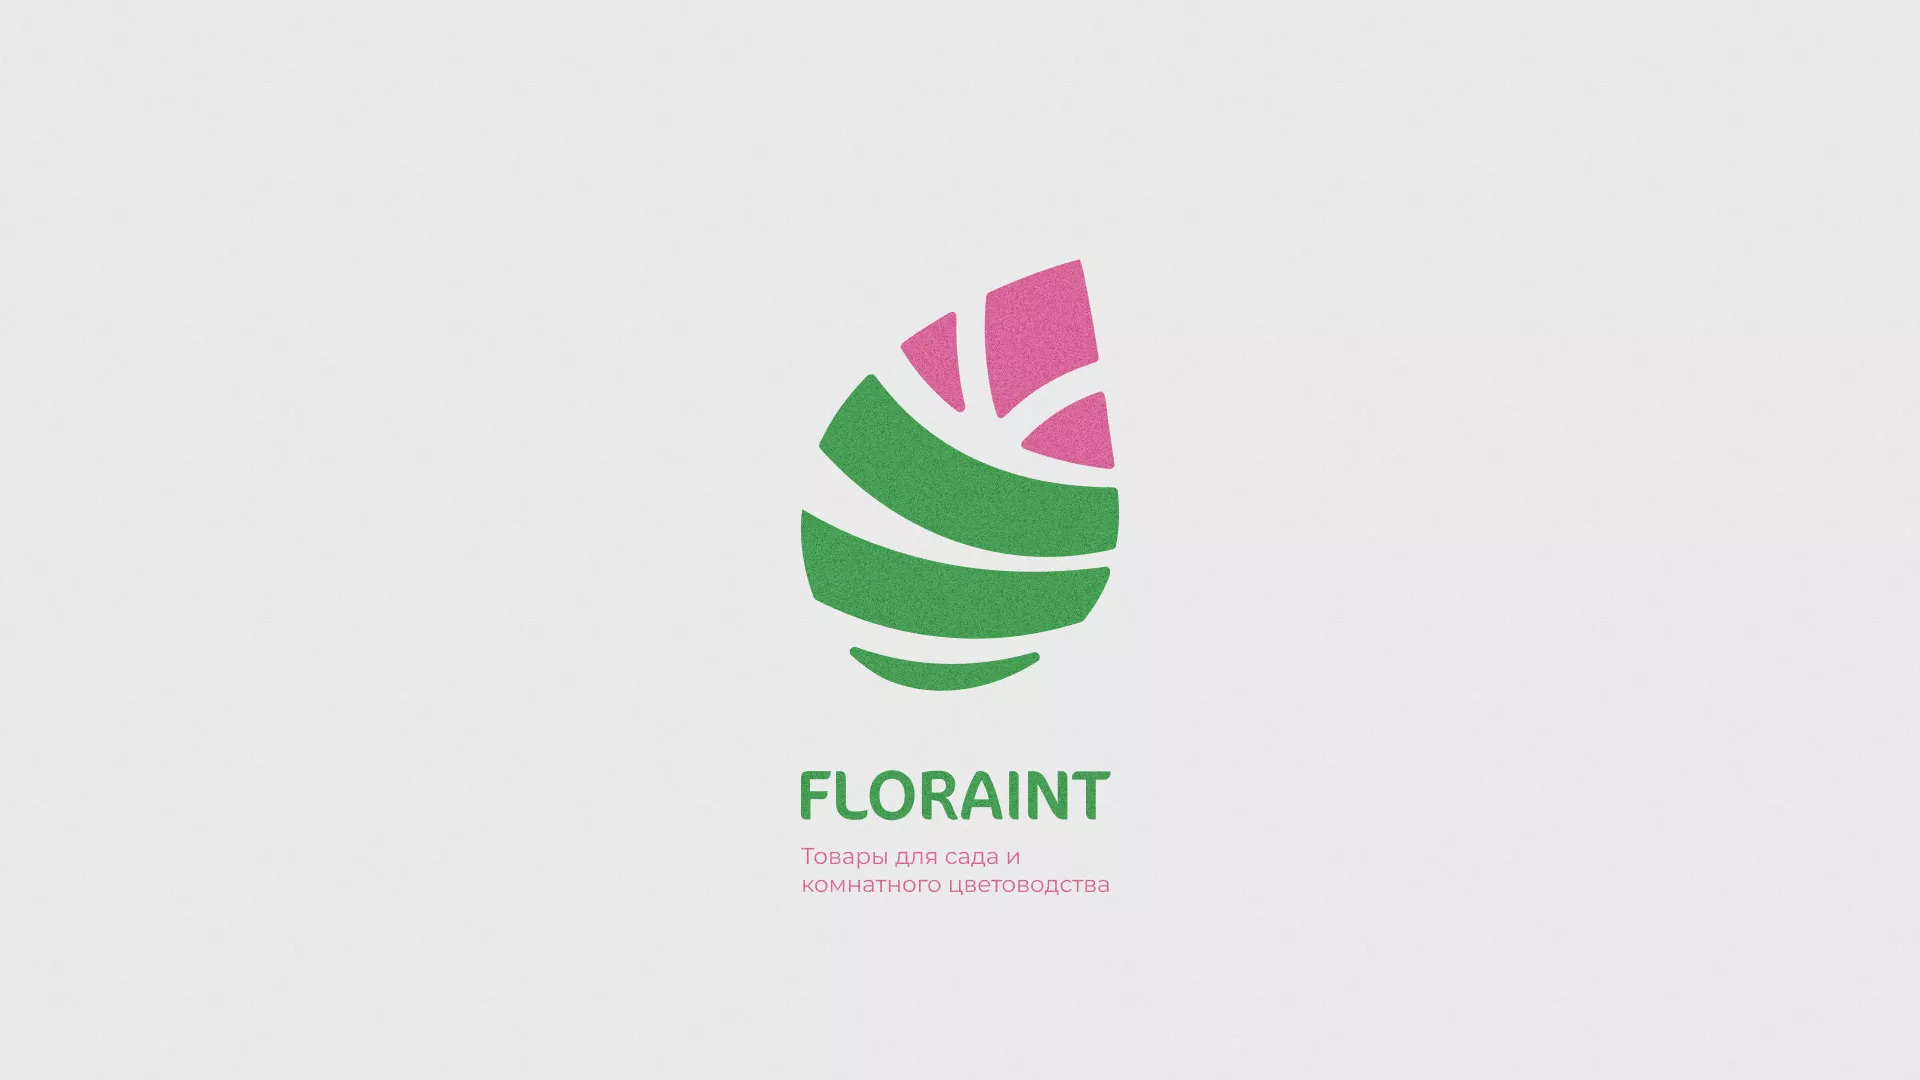 Разработка оформления профиля Instagram для магазина «Floraint» в Фурманове